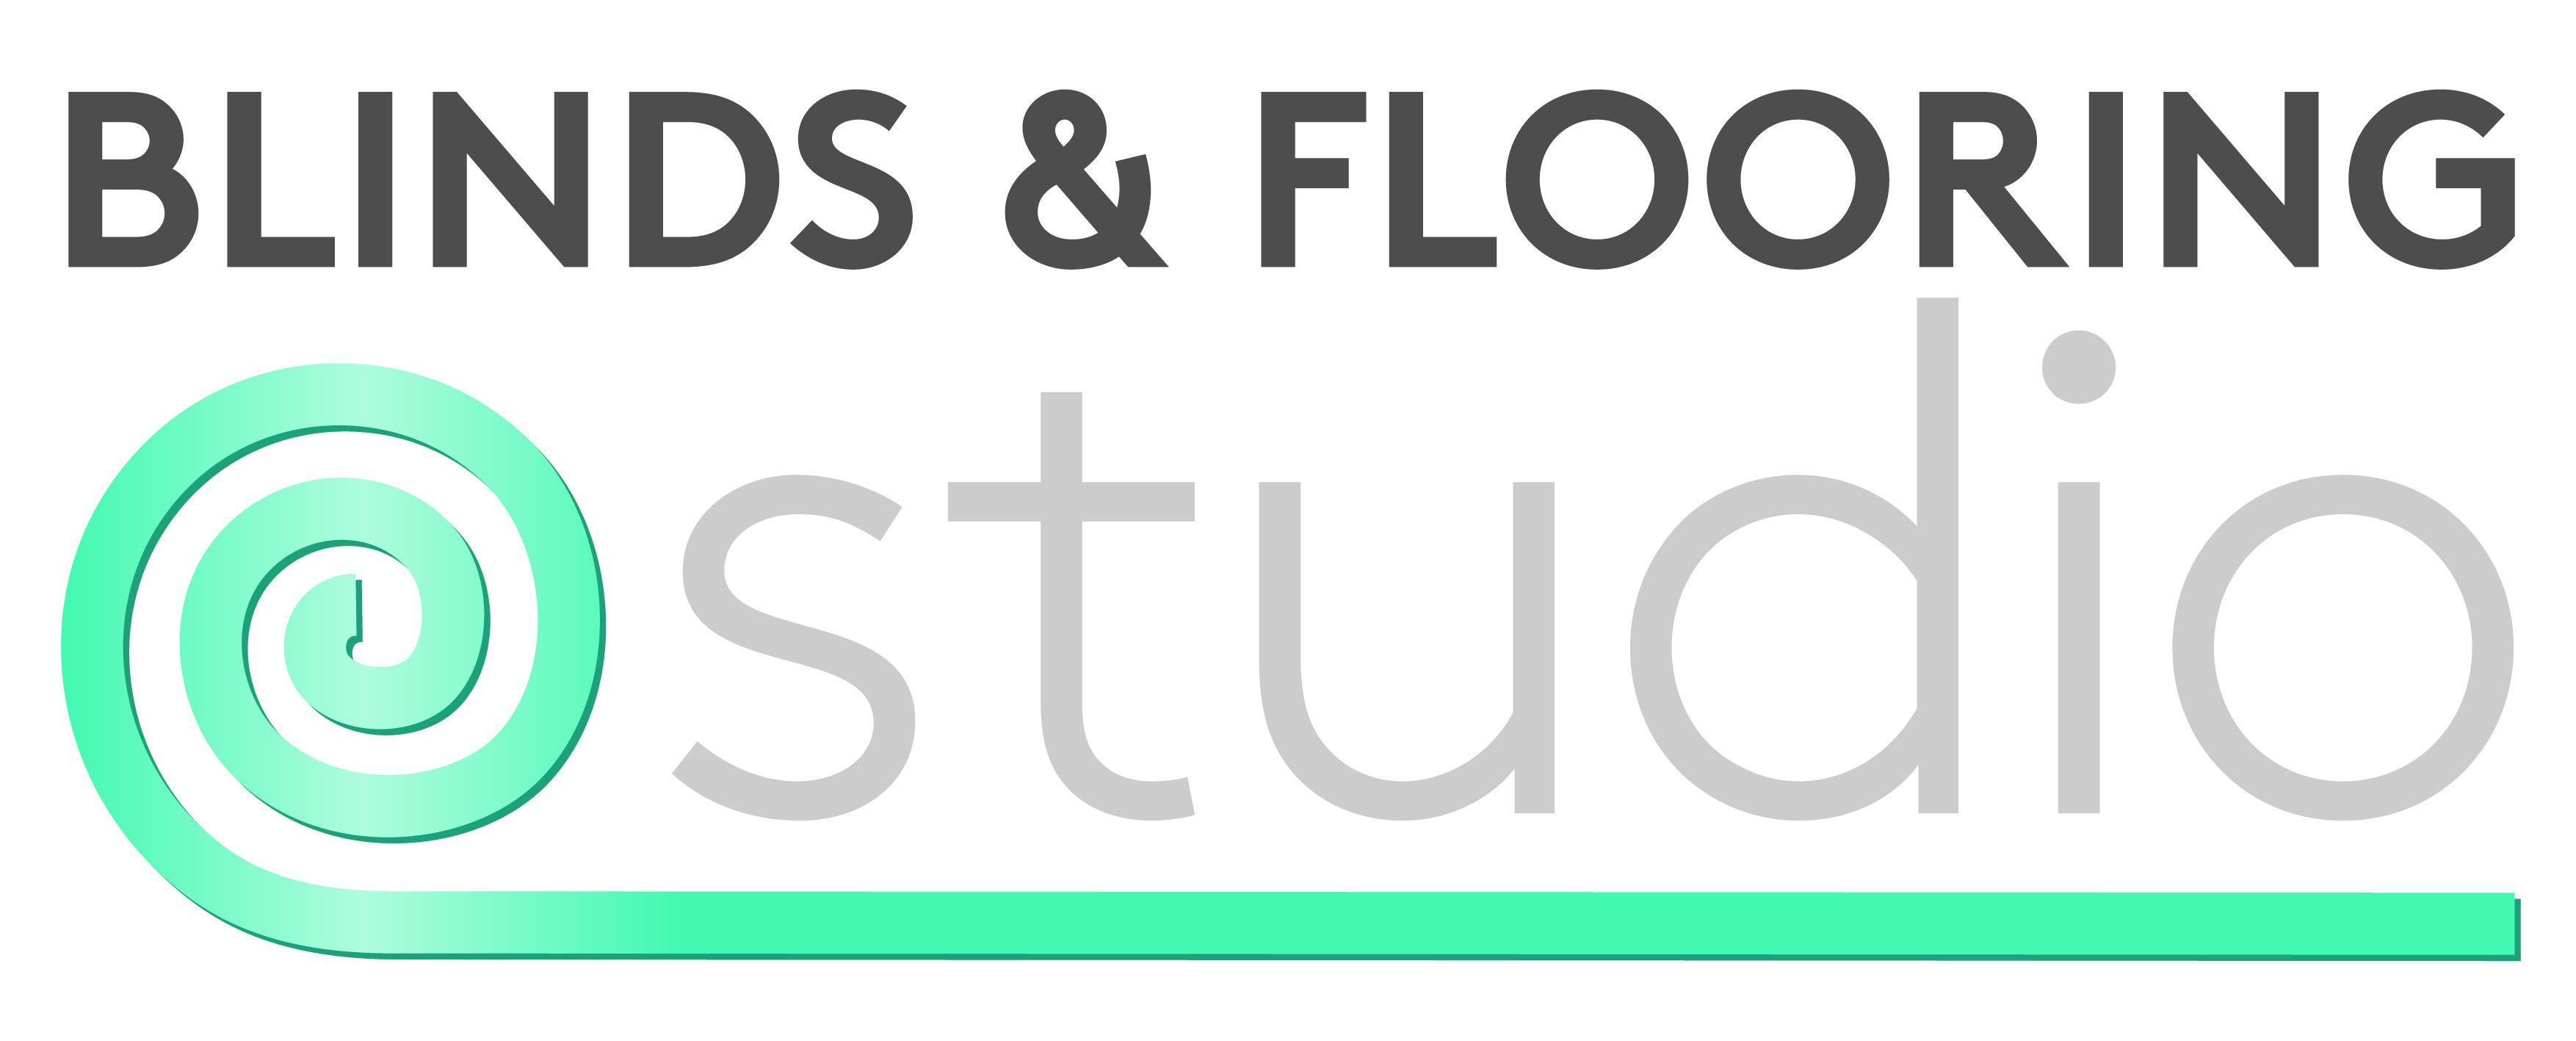 Blinds & flooring Studio logo